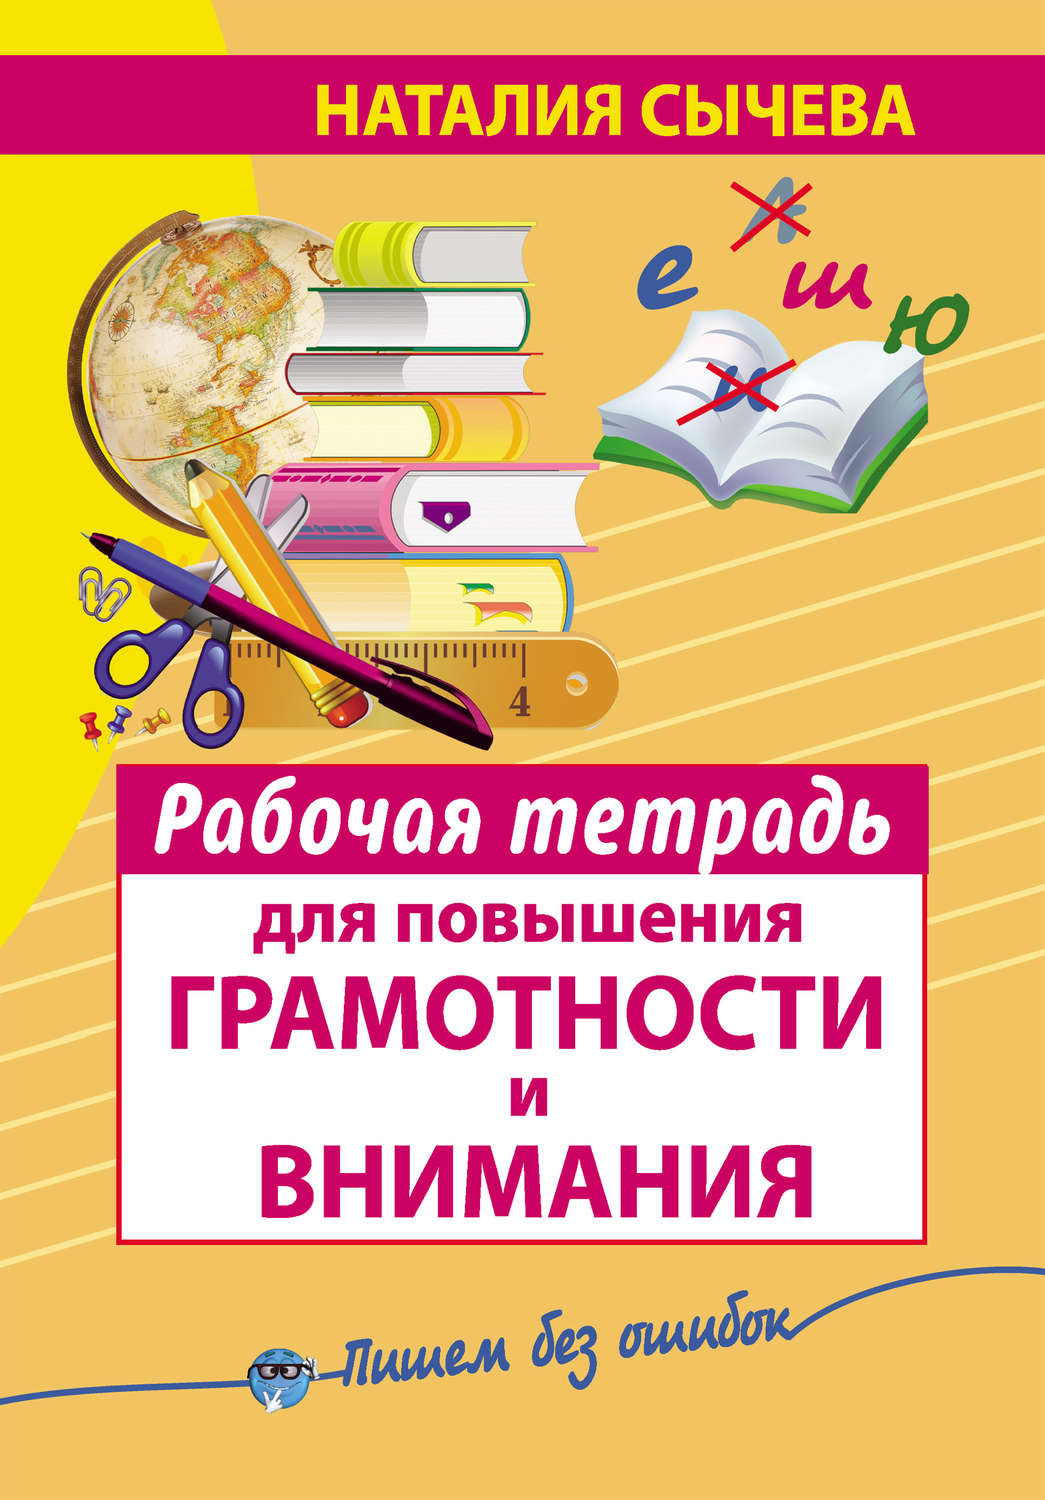 Все правила русского языка 5-9 класс xbmfnm